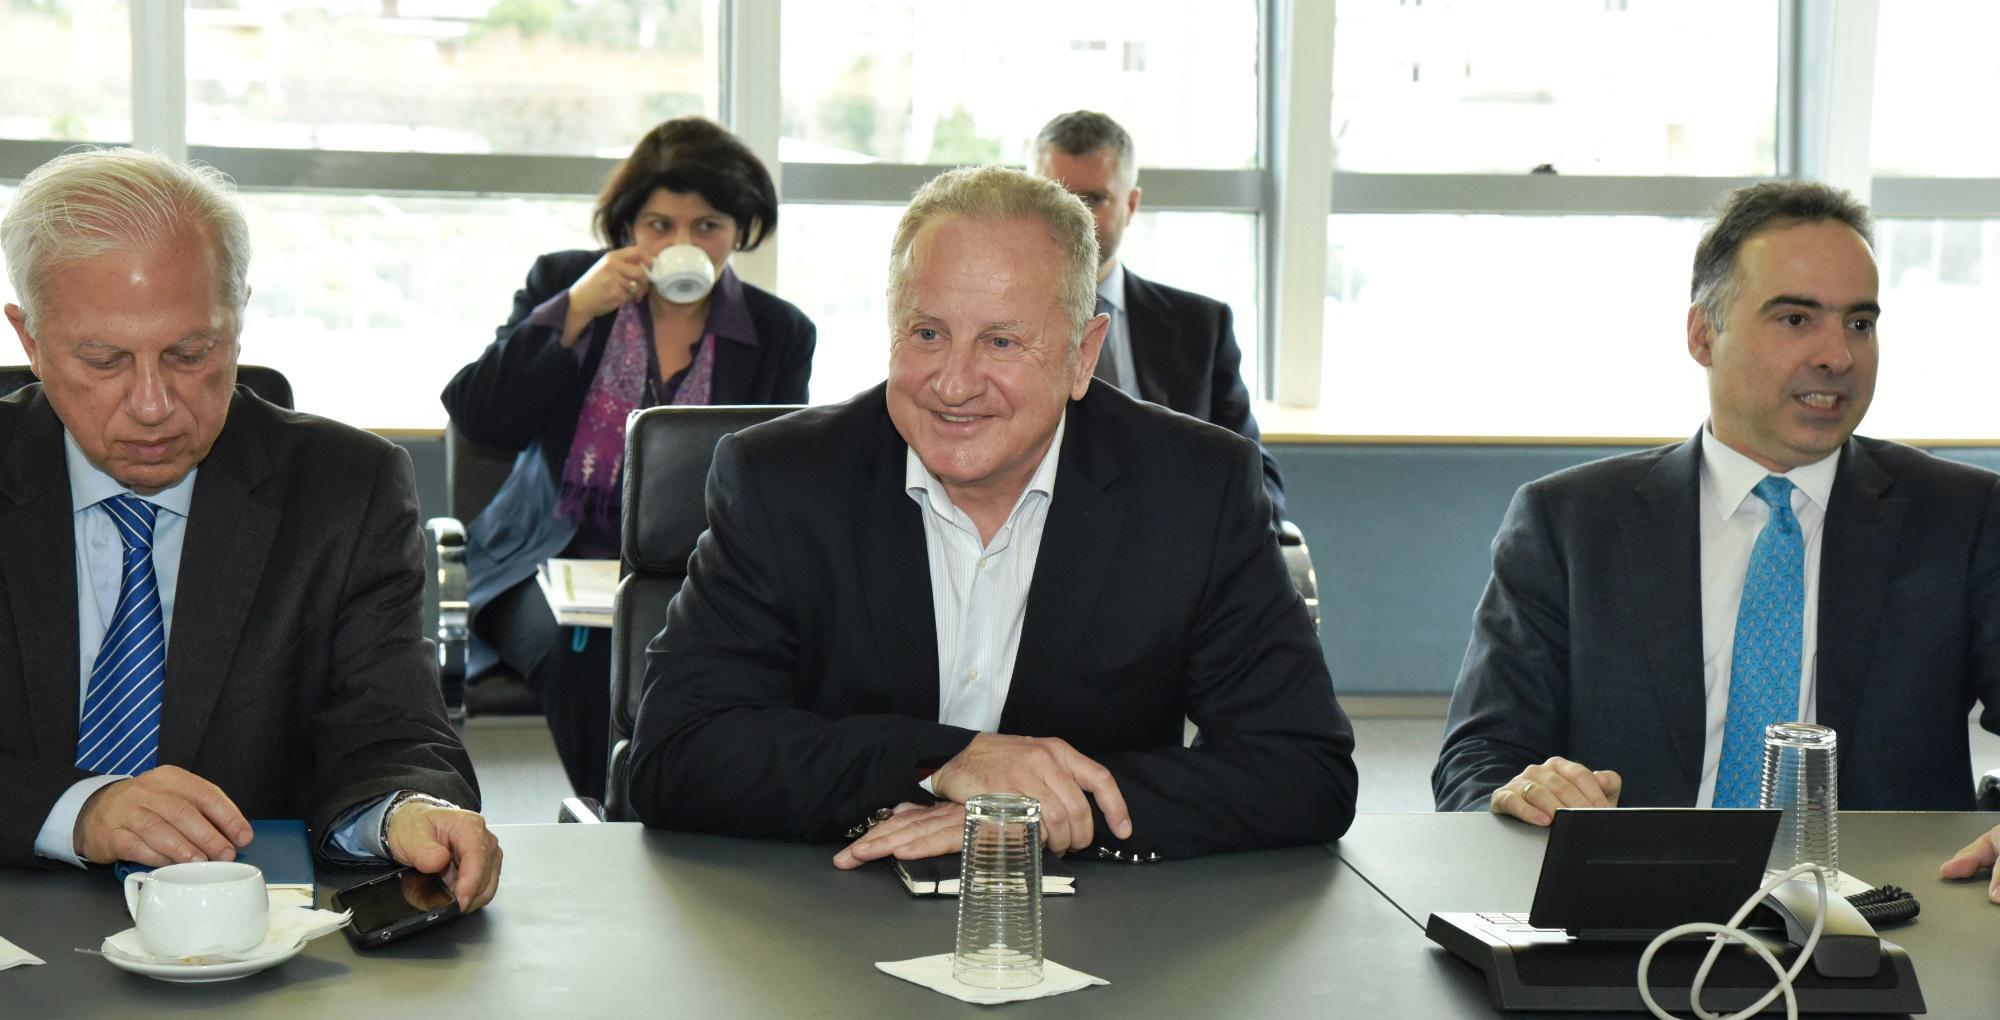 Ο κ. Γρ. Στεργιούλης, δεξιά ο Γενικός Δ/ντης Στρατηγικού Σχεδιασμού & Ανάπτυξης κ. Γιώργος Αλεξόπουλος και αριστερά ο Σύμβουλος Διοίκησης κ. Ανδρέας Τζούρος. 